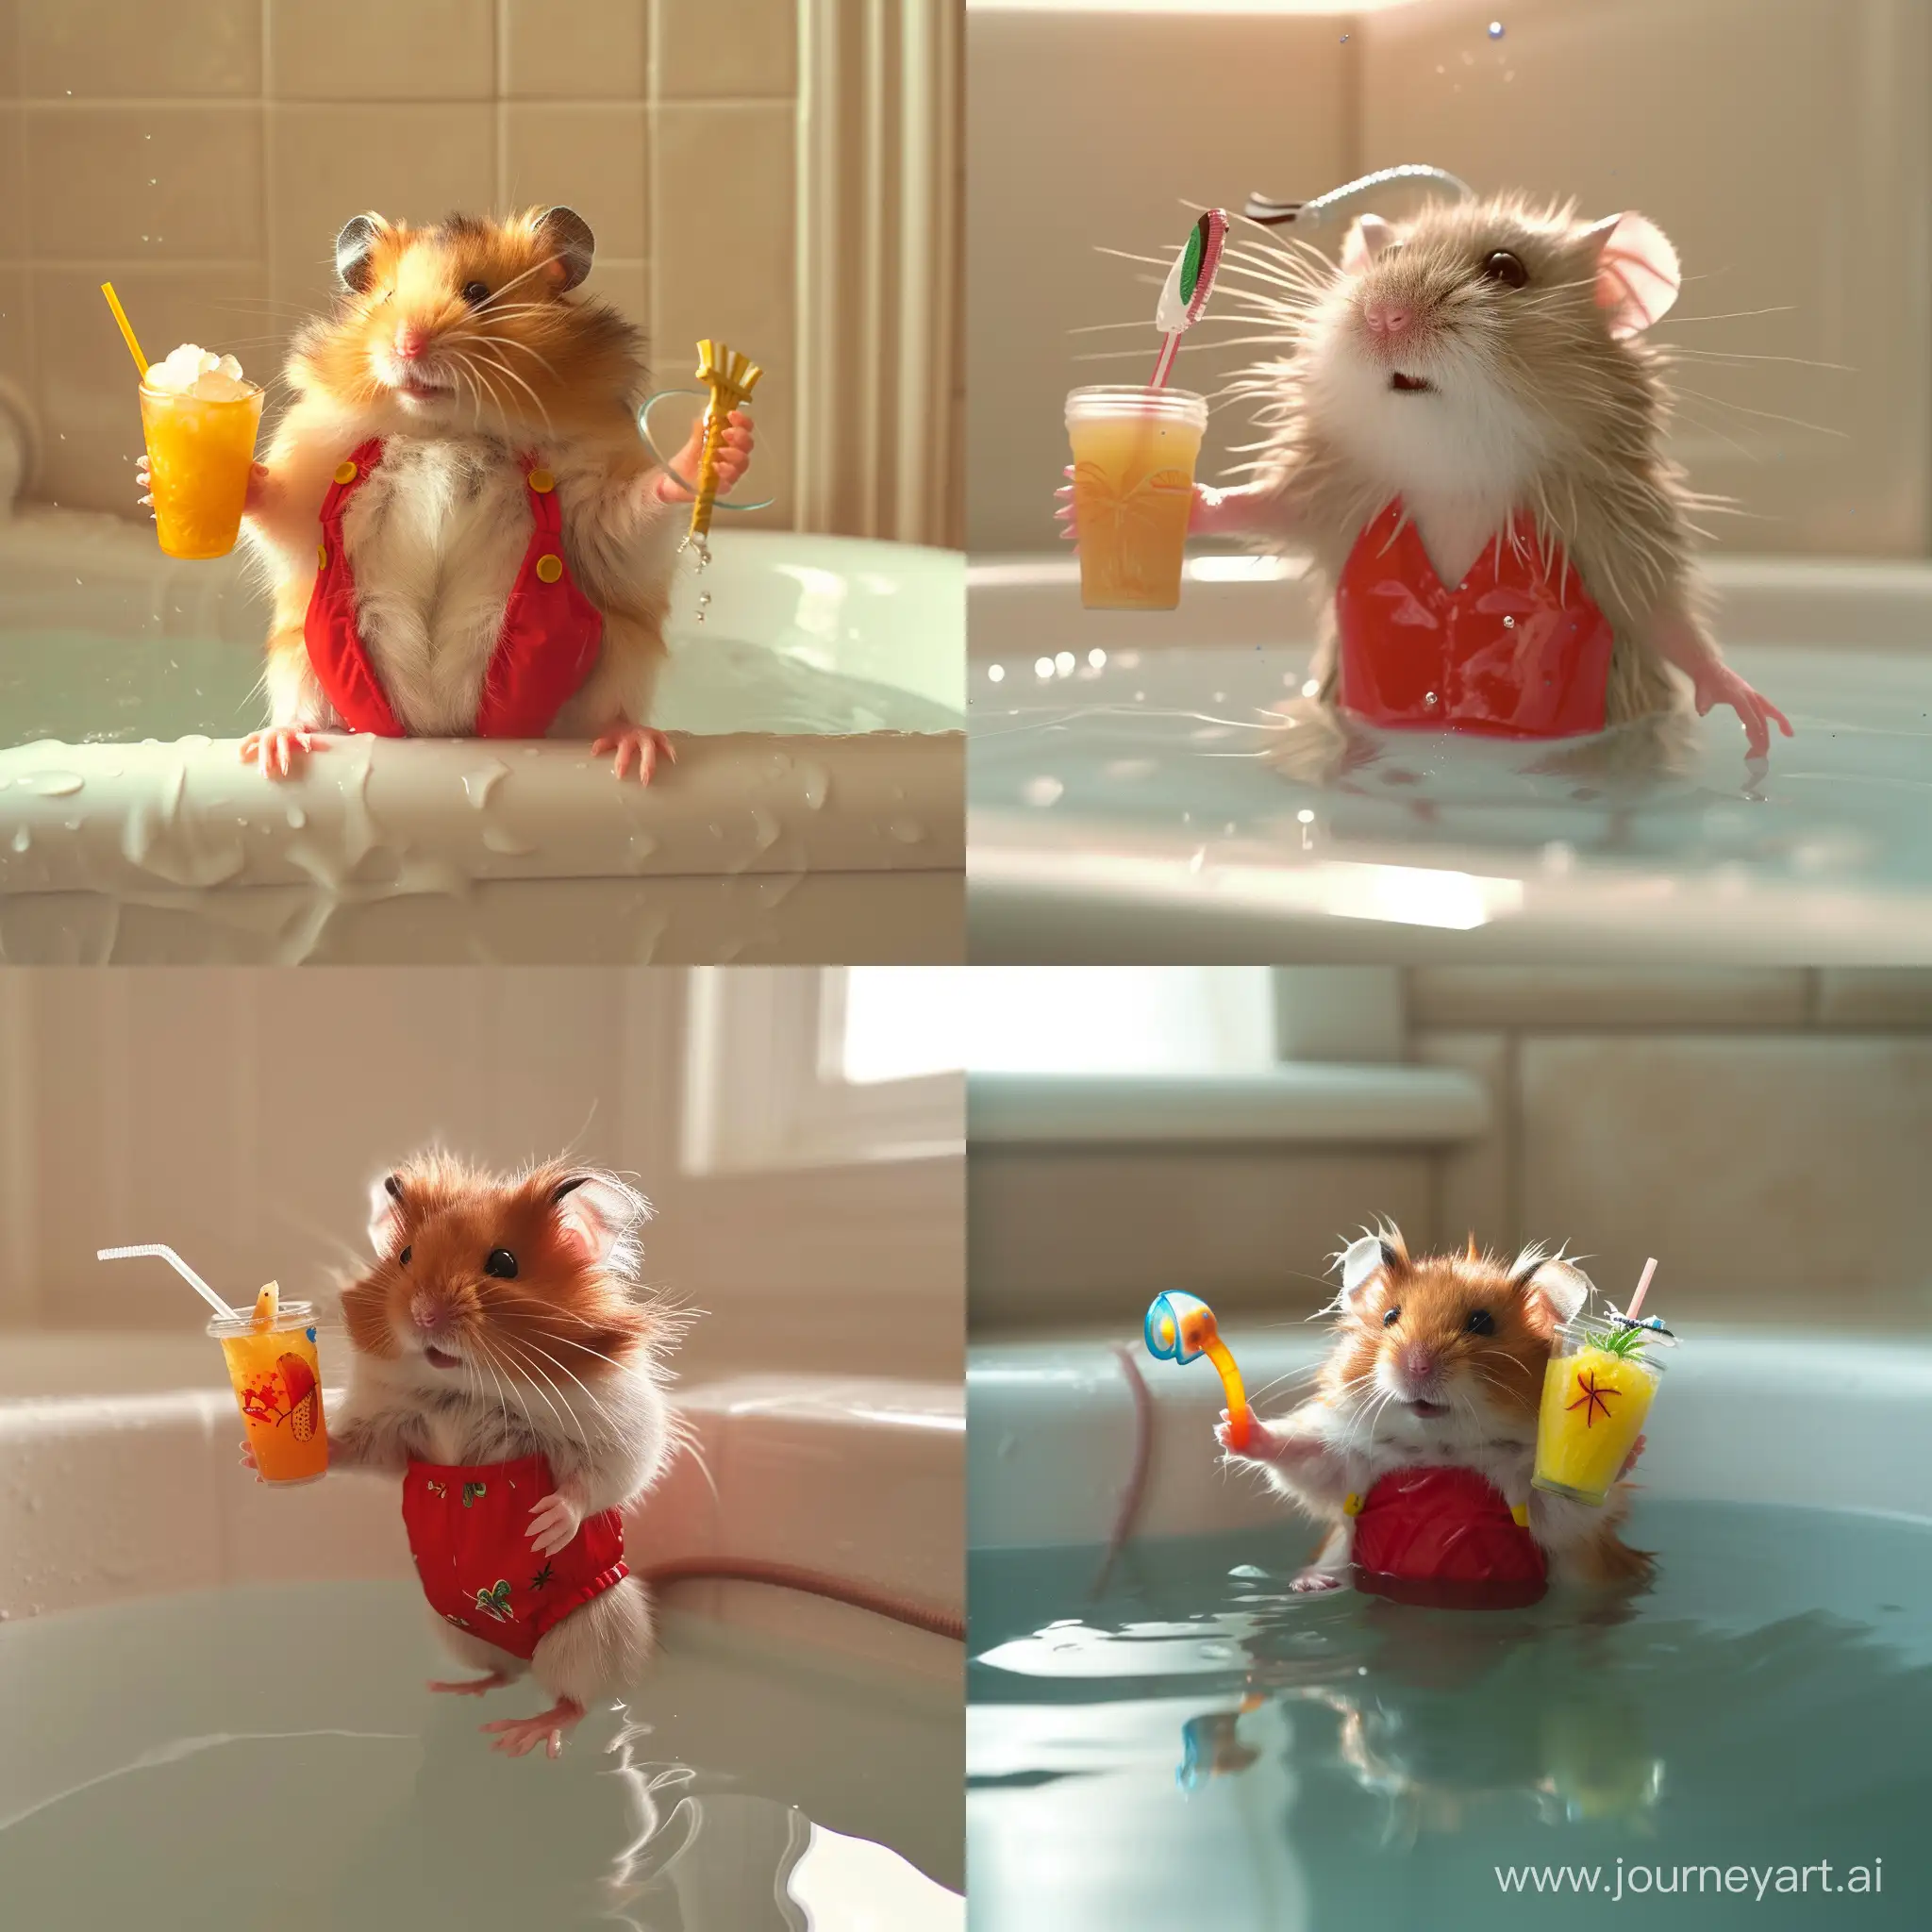 jeg vil ha et hamster i badedrakt hamsteren skal ha snorkel, hamsteren er søt men har på en fresh og stilig rød badedrakt og holder en pina colada I hånden. det er sol og hamsteren koser seg i badekaret